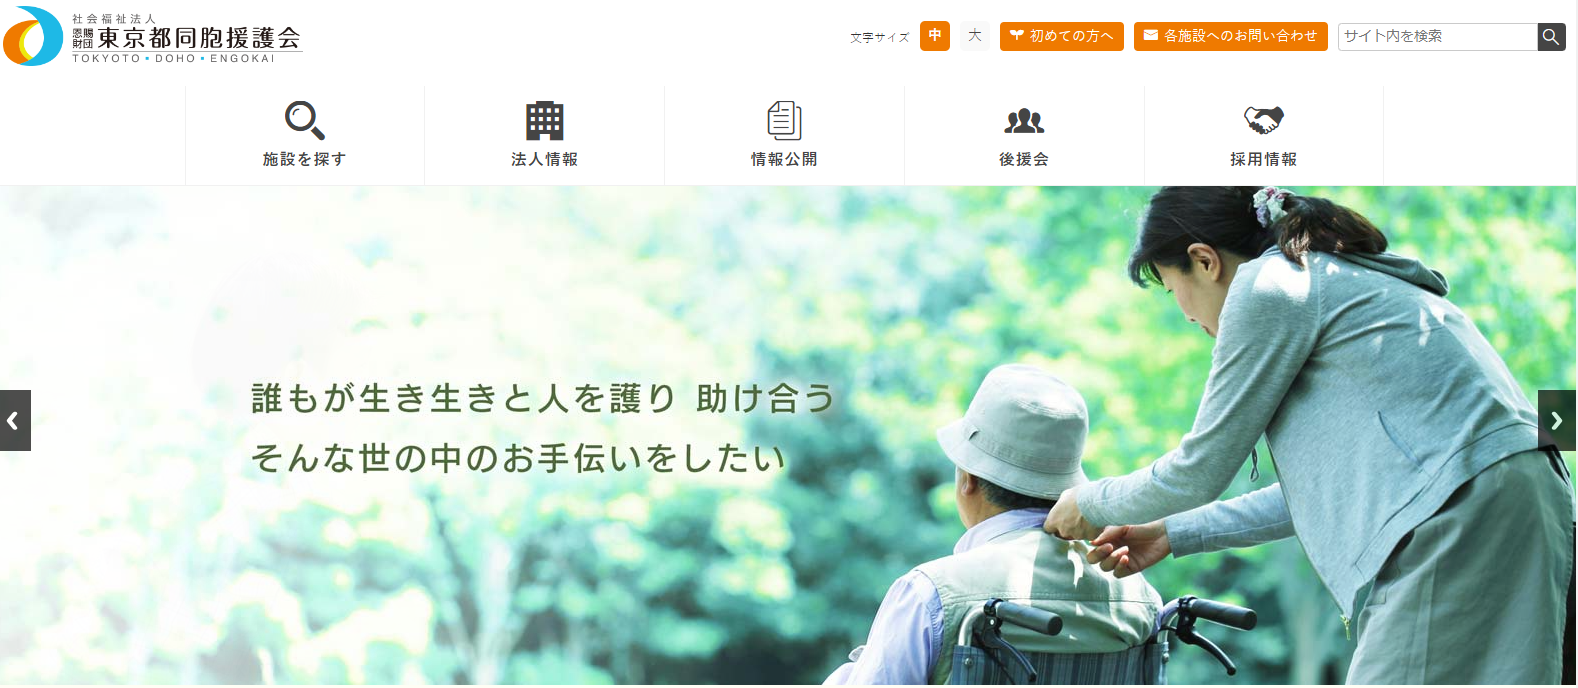 社会福祉法人恩賜財団東京都同胞援護会のホームページキャプチャ画像